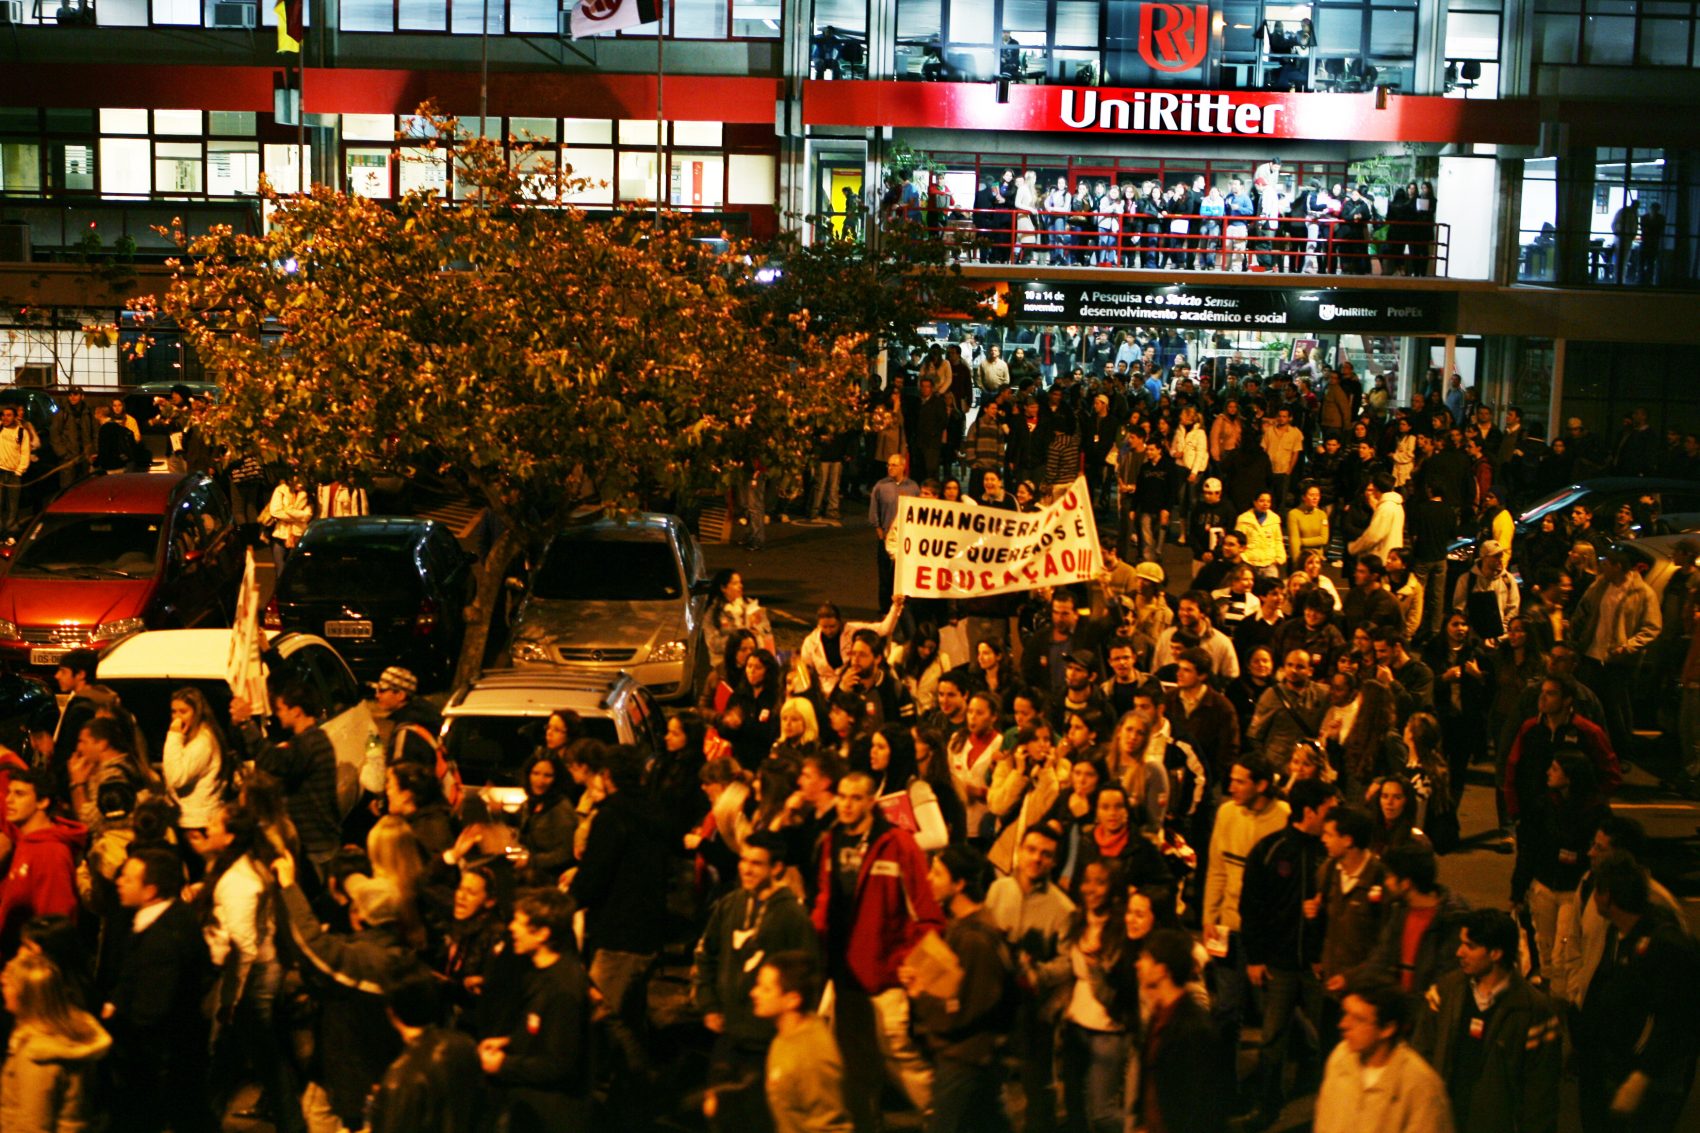 Em setembro de 2008, quando a UniRitter estava prestes a ser negociado com o Grupo Anhanguera, sindicatos, professores e estudantes protestaram contra a venda e a transação foi interrompida